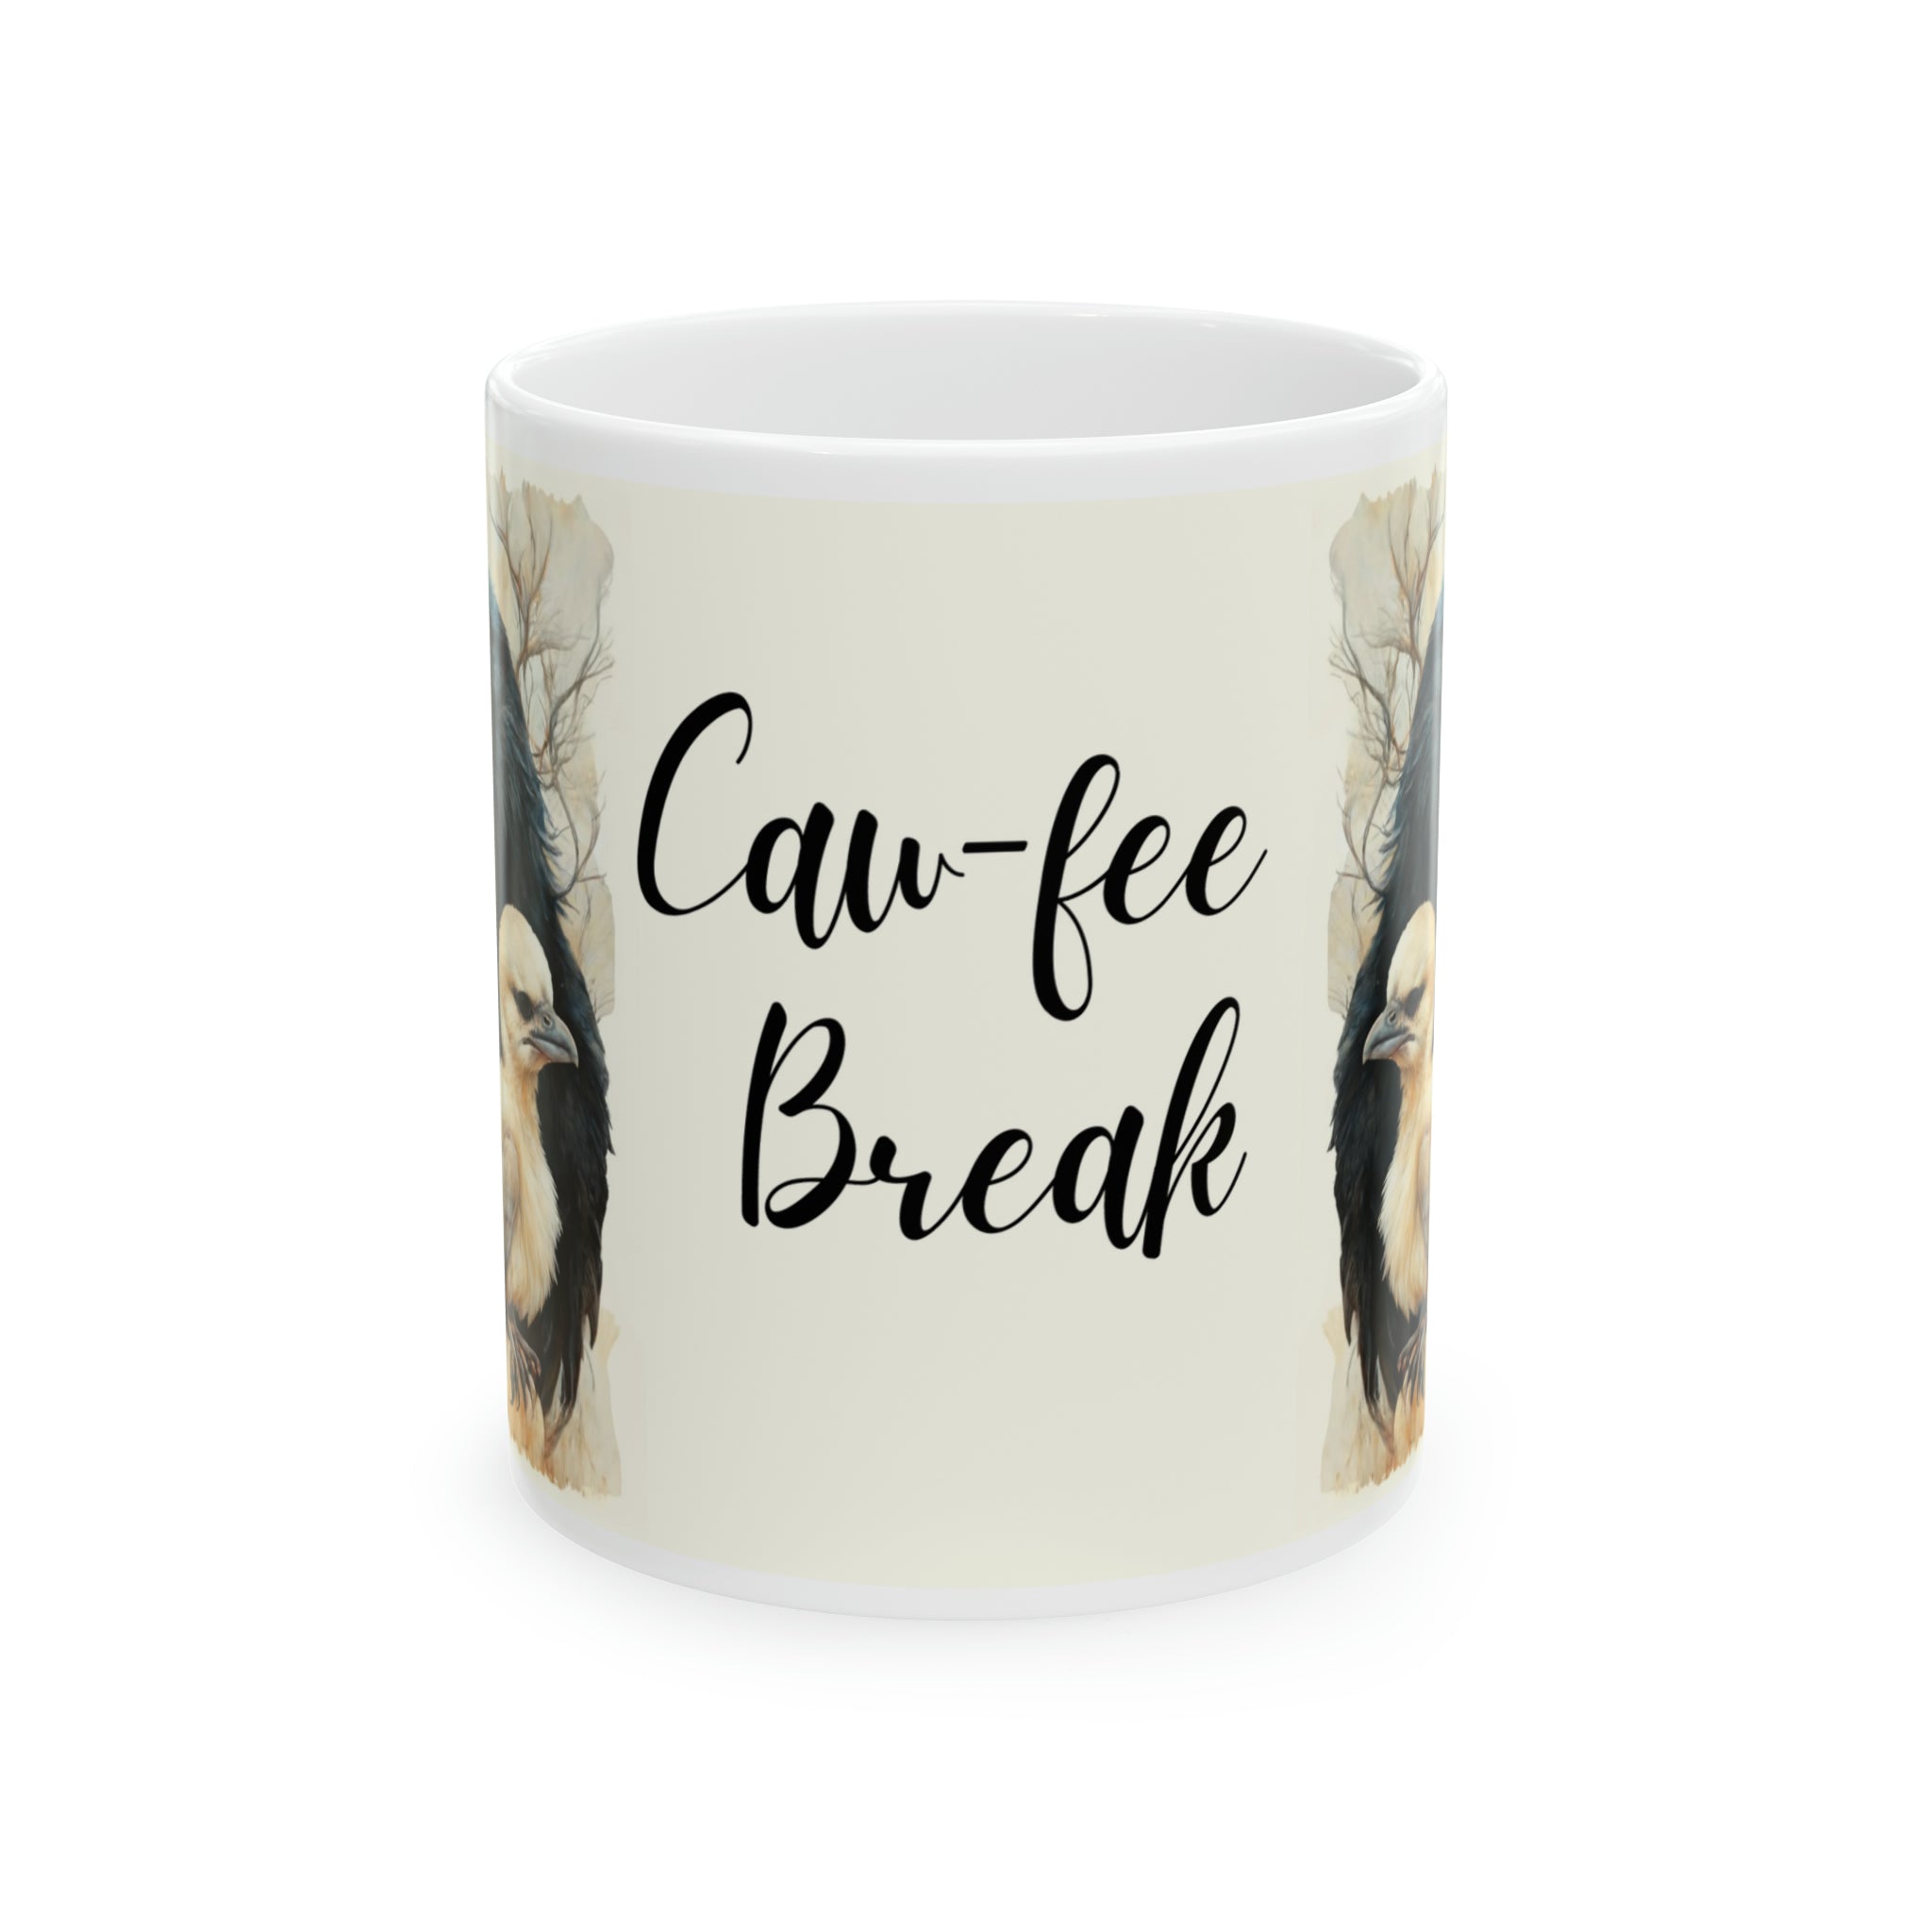 Caw-fee Break - Ceramic Mug, 11oz